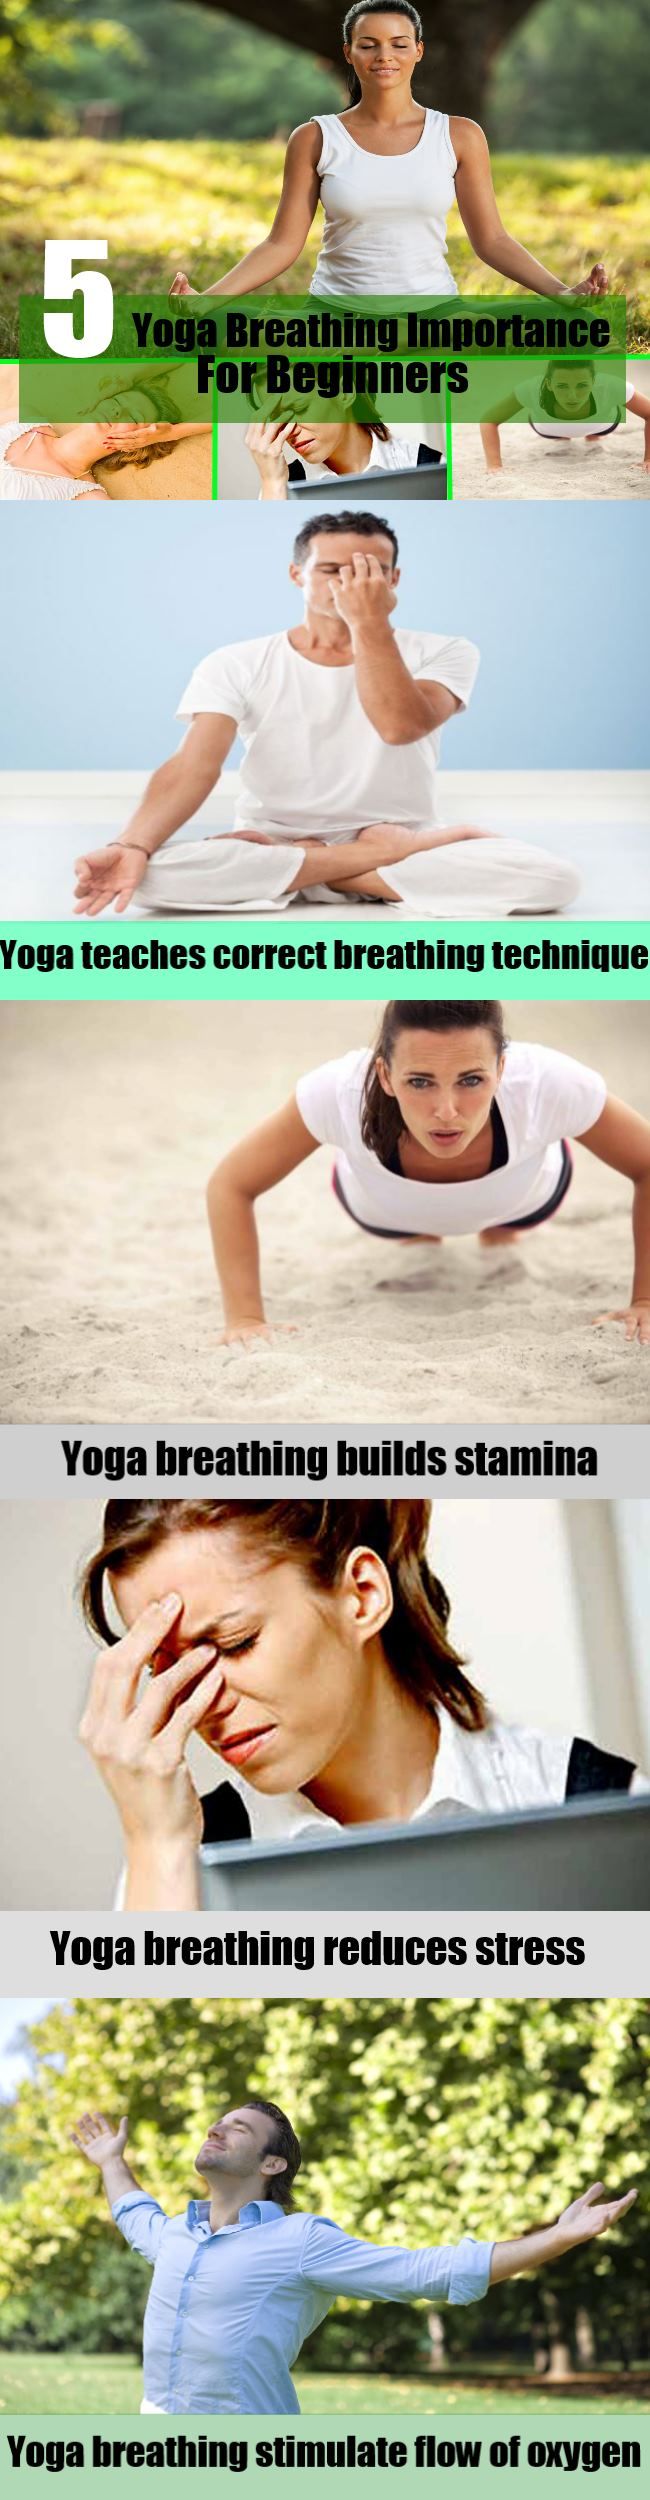 la respiration de yoga